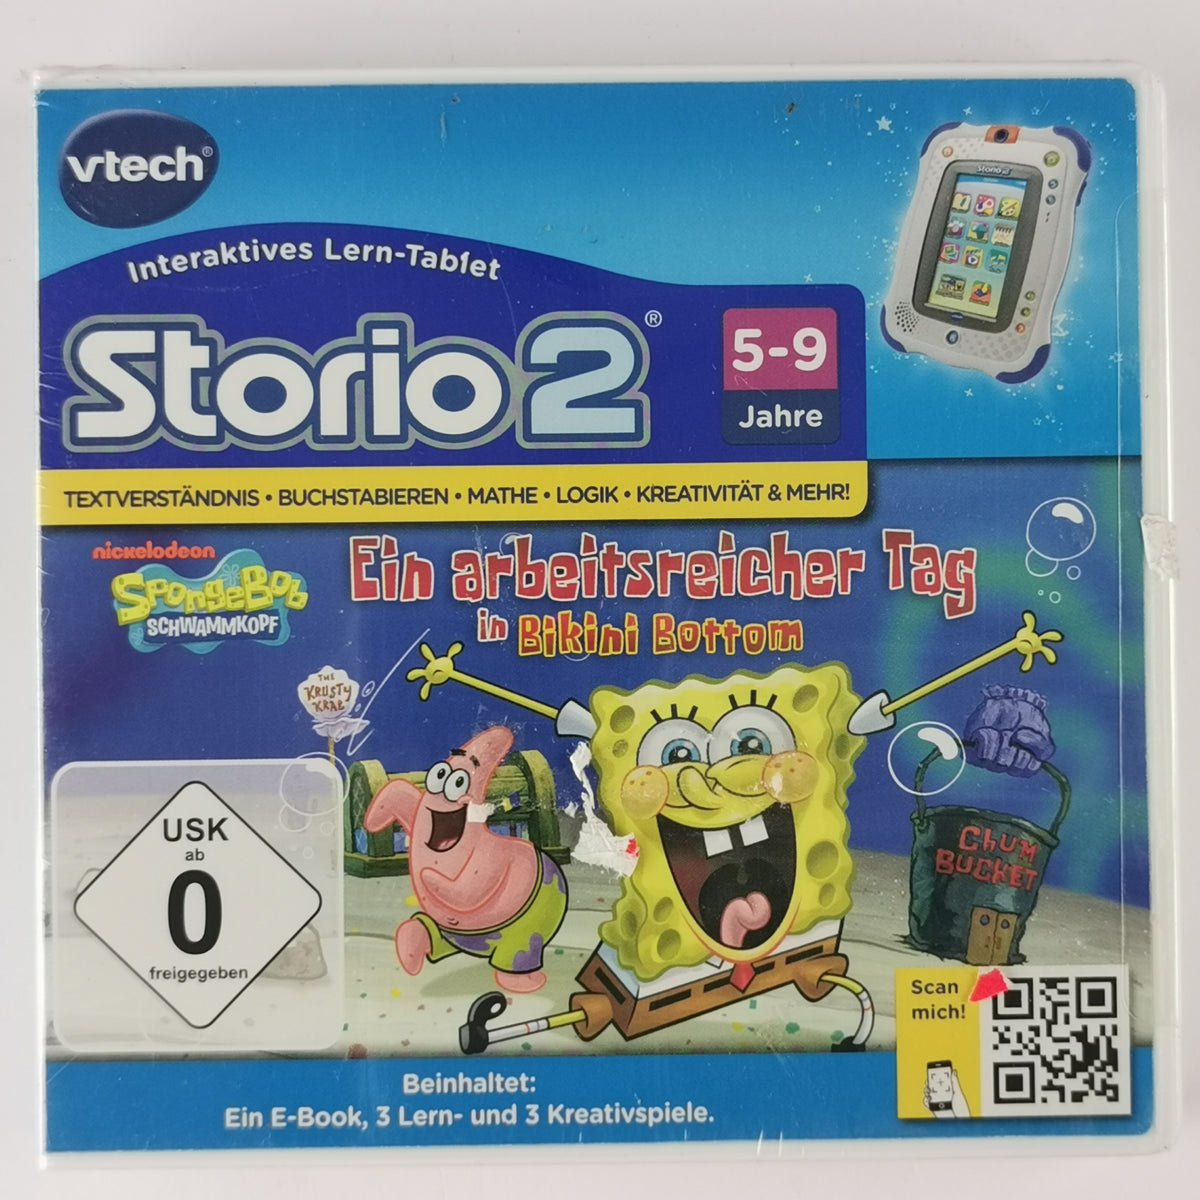 VTech SpongeBob Storio 2 Storio 3S [VS]